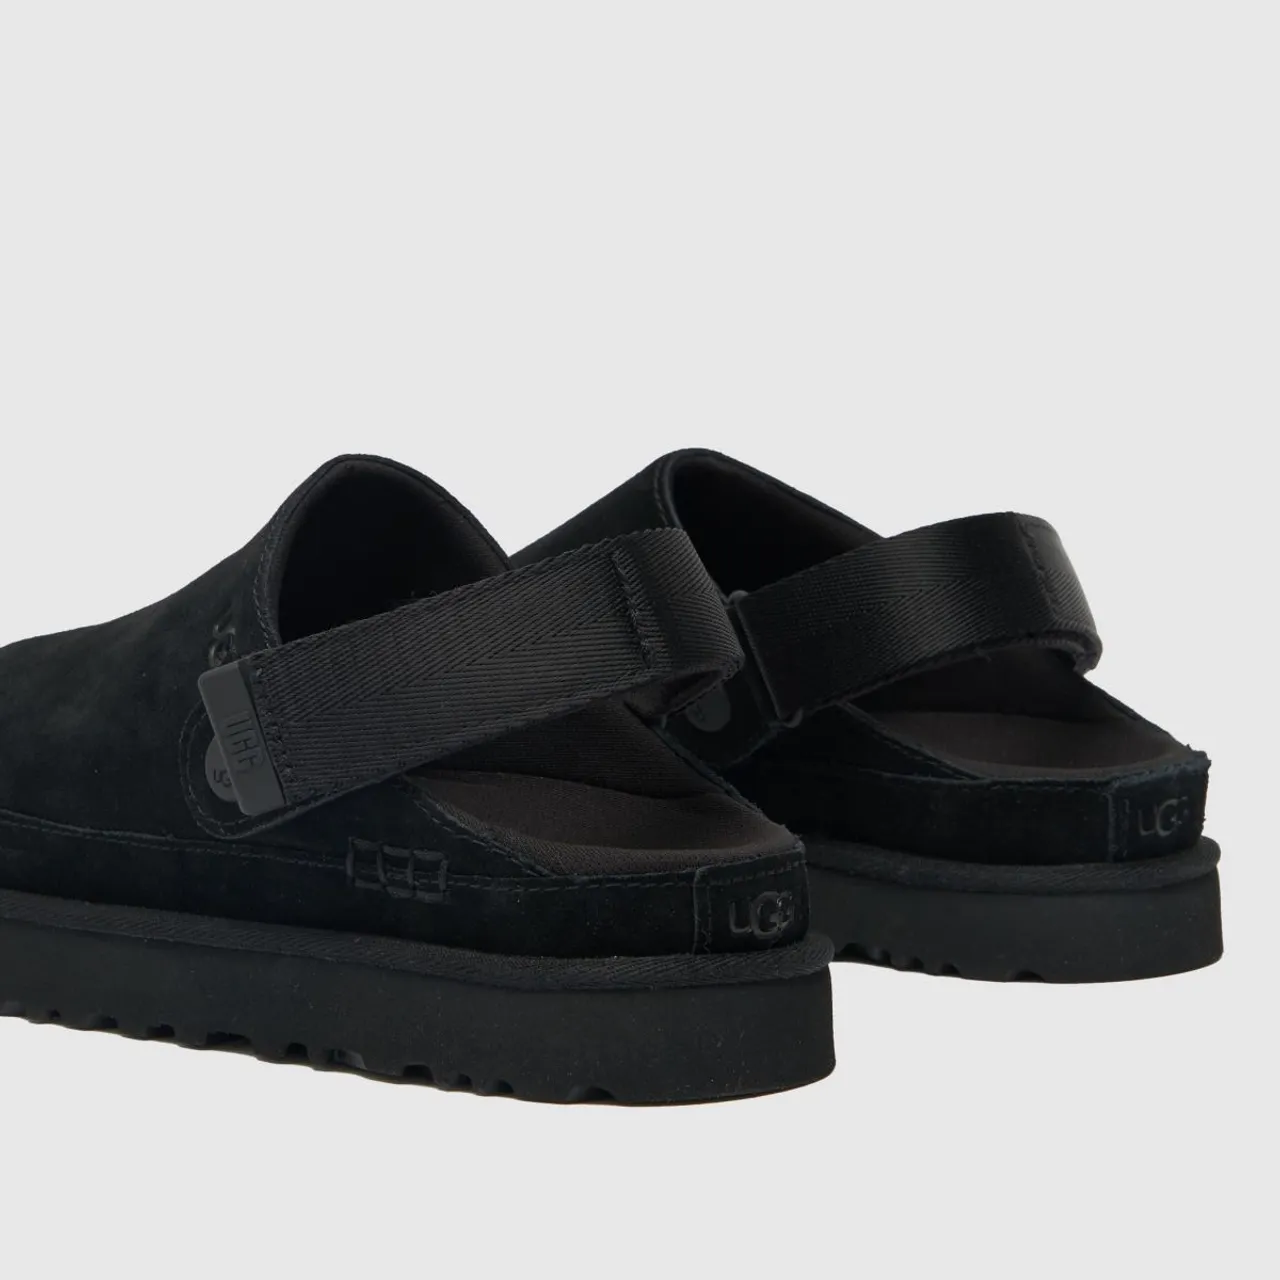 Ugg Goldenstar Clog Sandals In Black